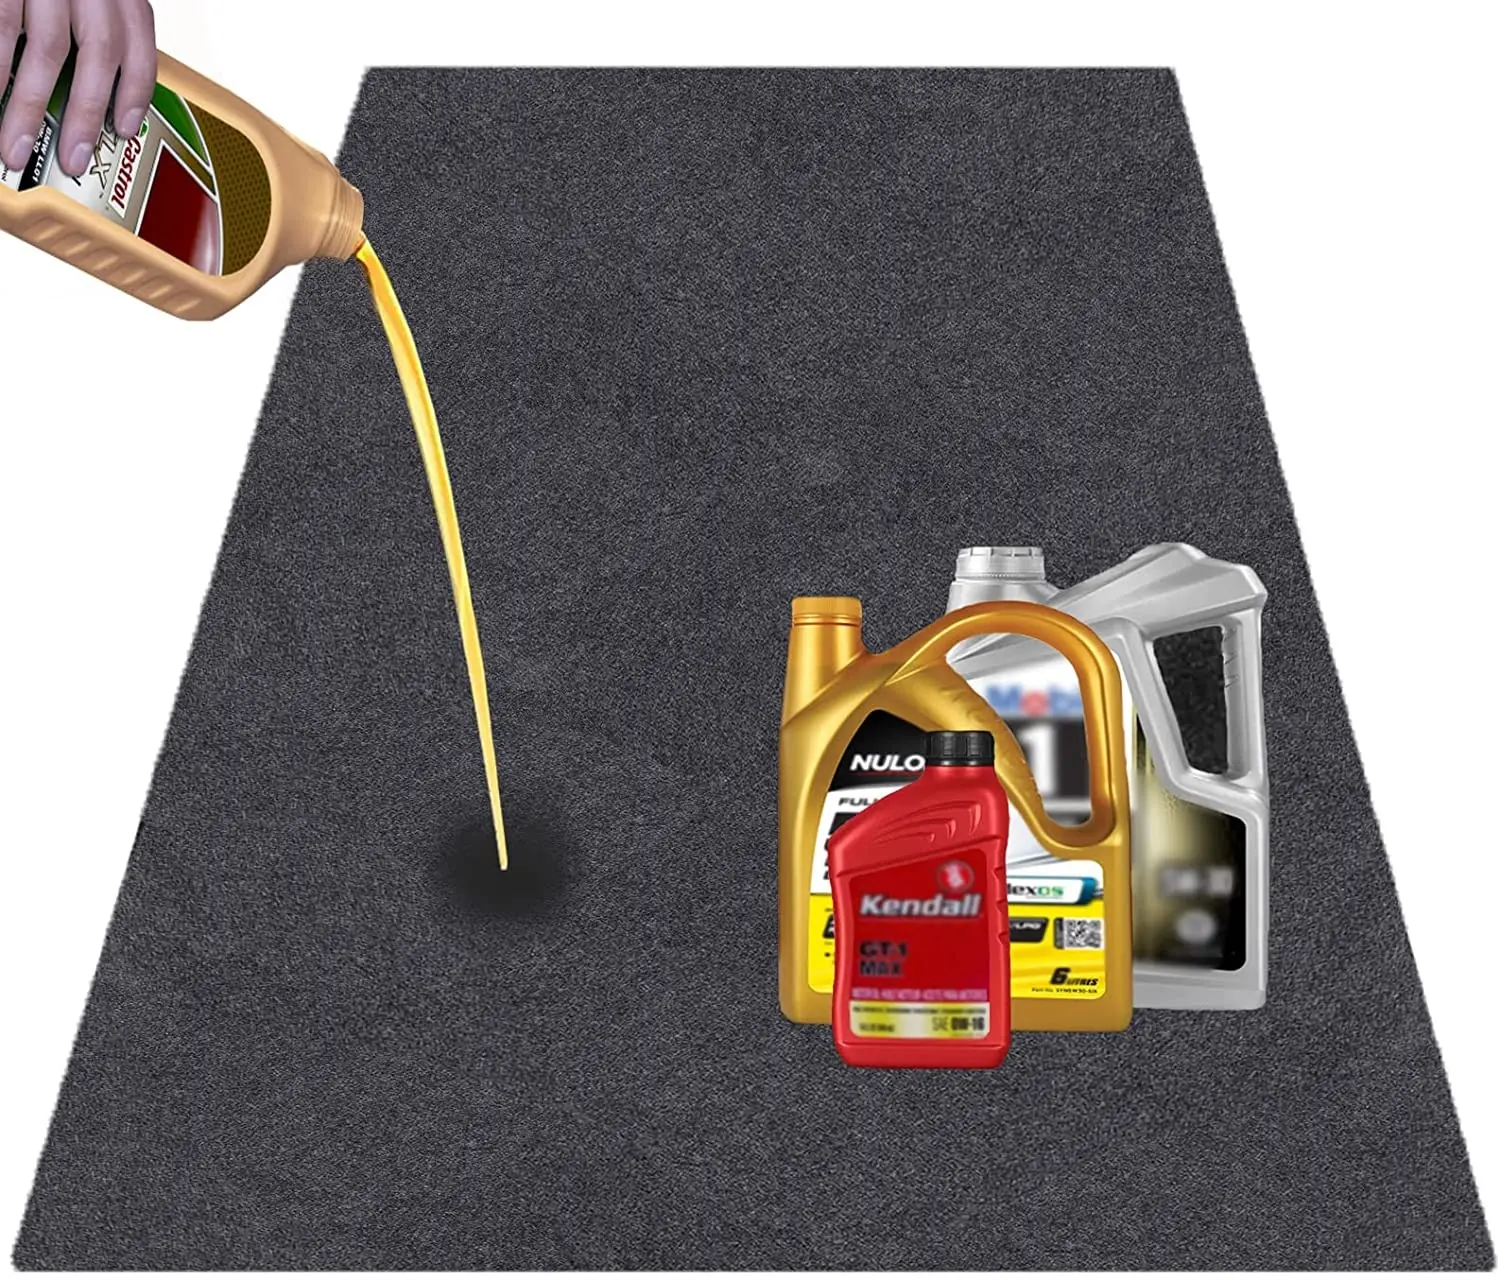 Tappetini per Garage proteggono i pavimenti dalle fuoriuscite gocciolamenti macchie tappetini lavabili riutilizzabili